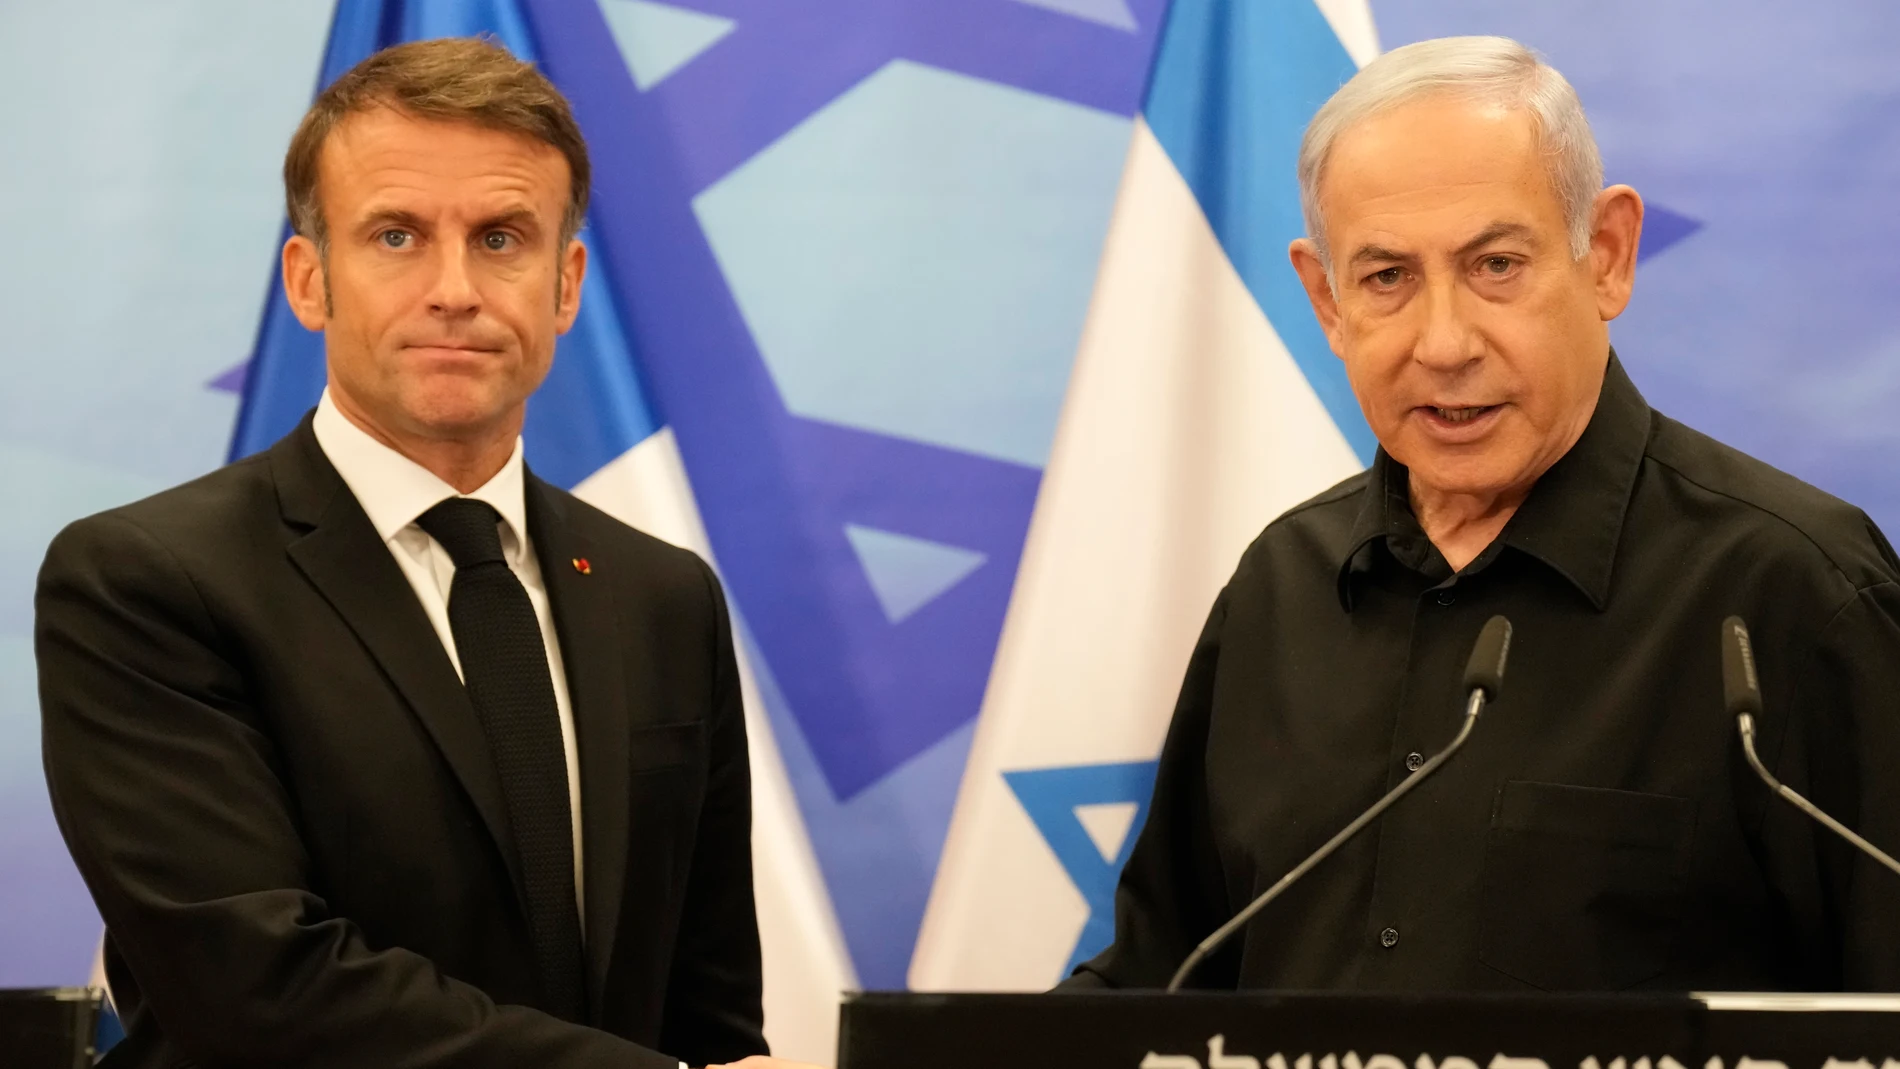 El presidente francés, Emmanuel Macron, y el primer ministro israelí, Benjamín Netanyahu, se saludan tras su reunión en Tel Aviv